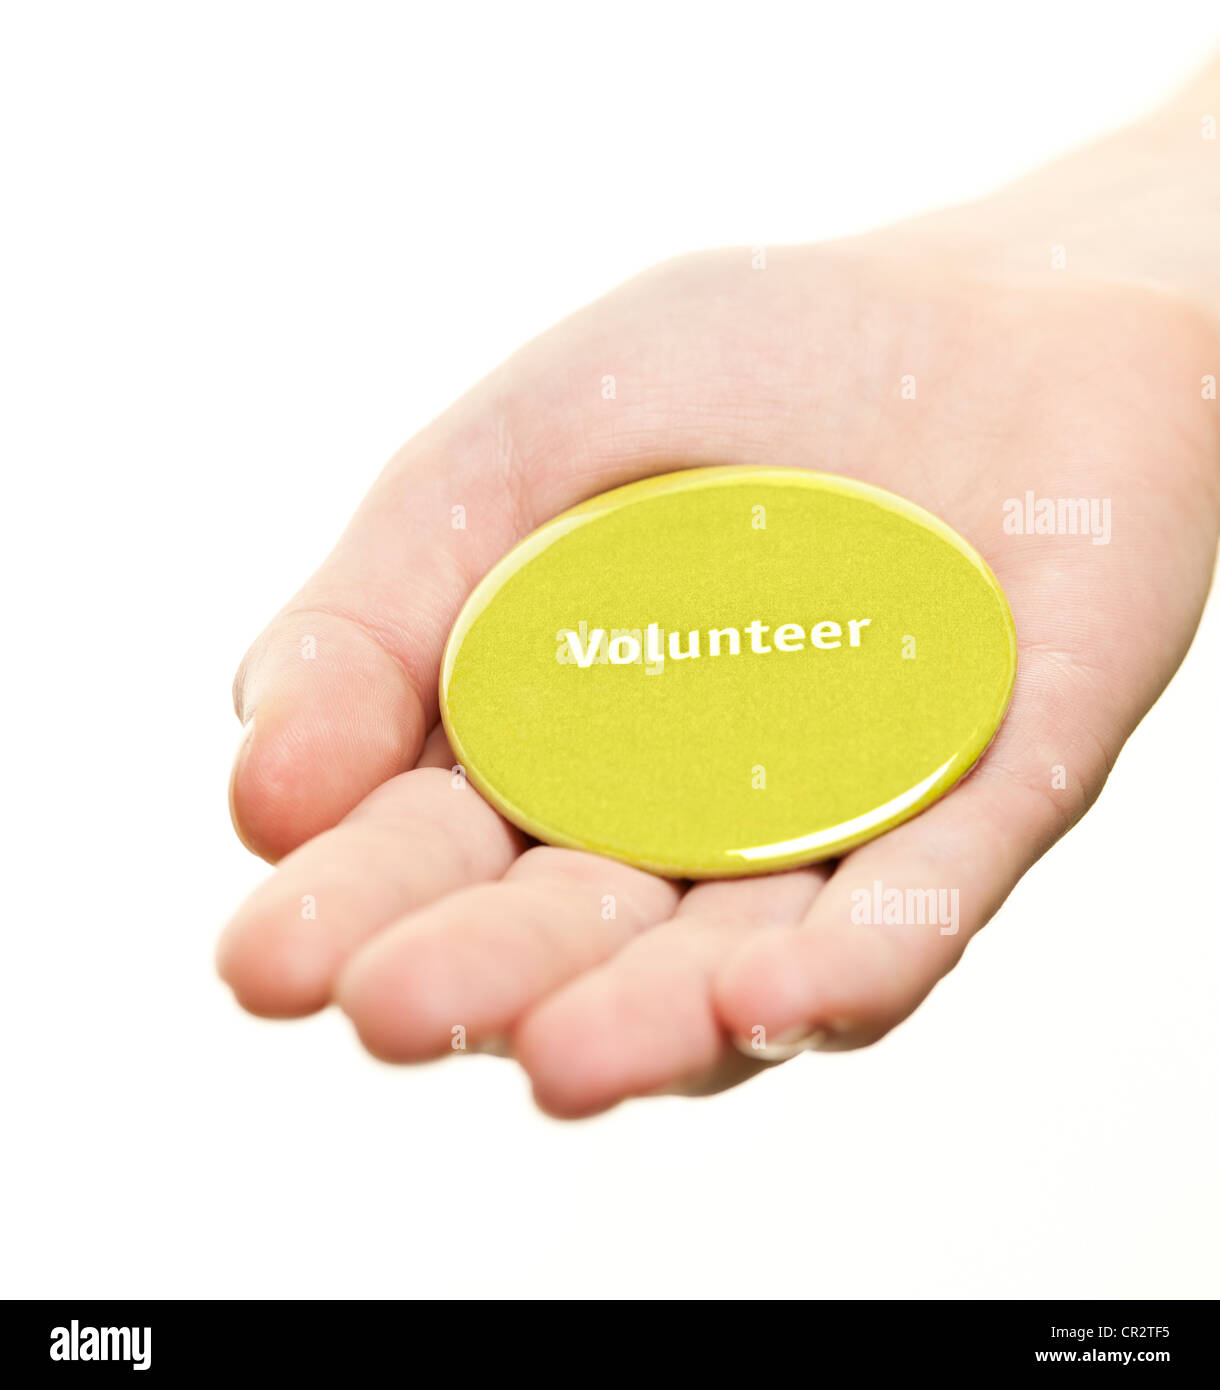 Mano sujetando el botón redondo verde voluntario aislado en blanco Foto de stock